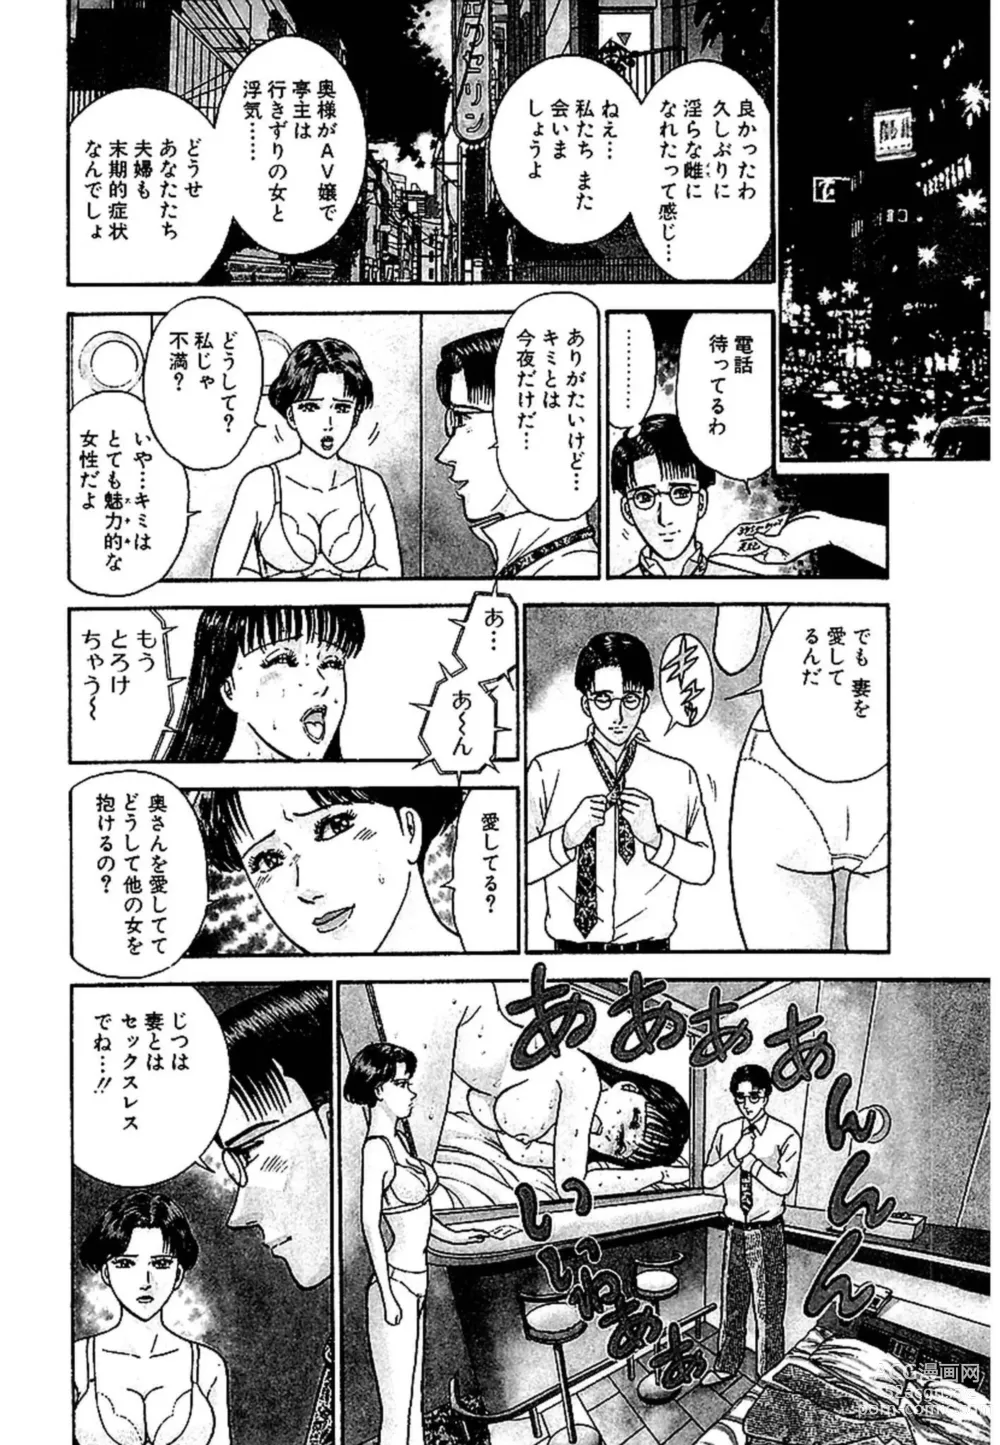 Page 30 of manga Sekkusuresu Shinsō-ban 1